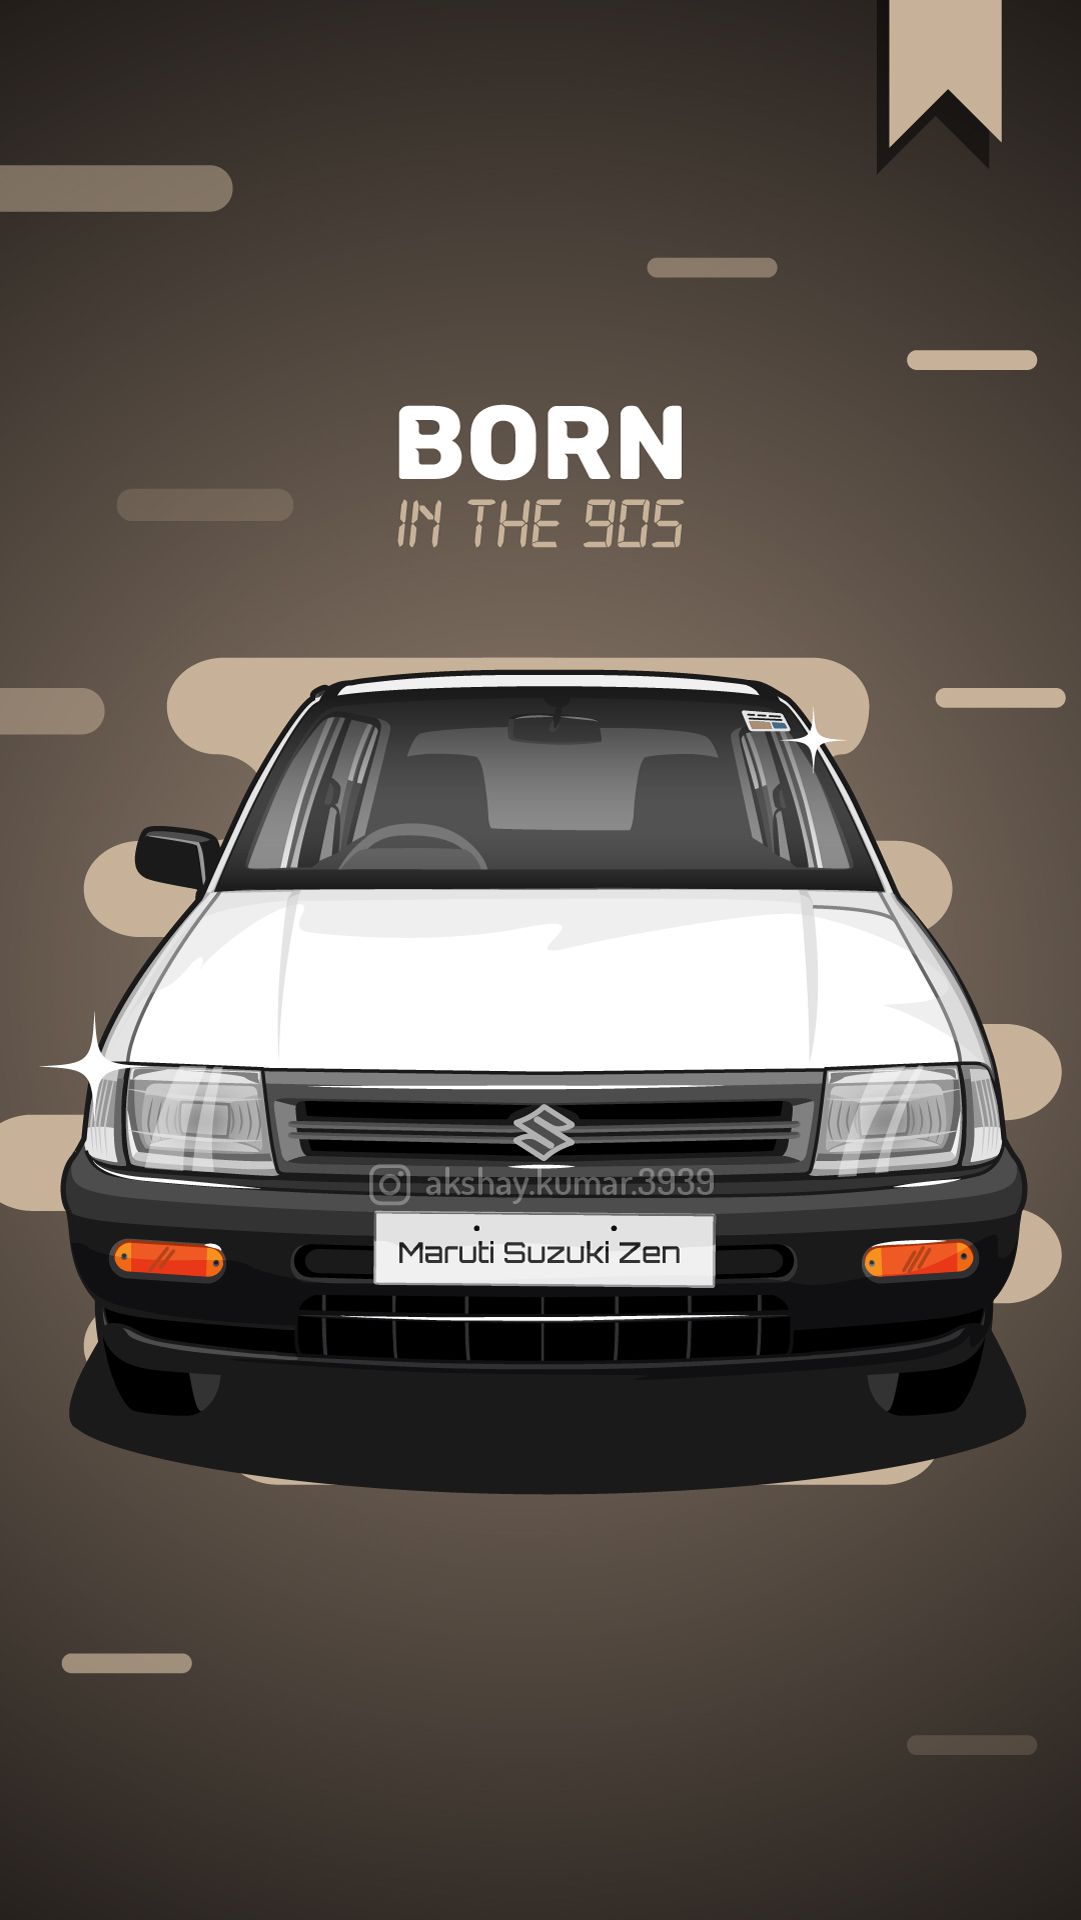 Maruti Suzuki Zen Wallpaper. Indian Cars Wallpaper. Vector Art. Born in the 90s. Car vector, Zen wallpaper, Vector artwork